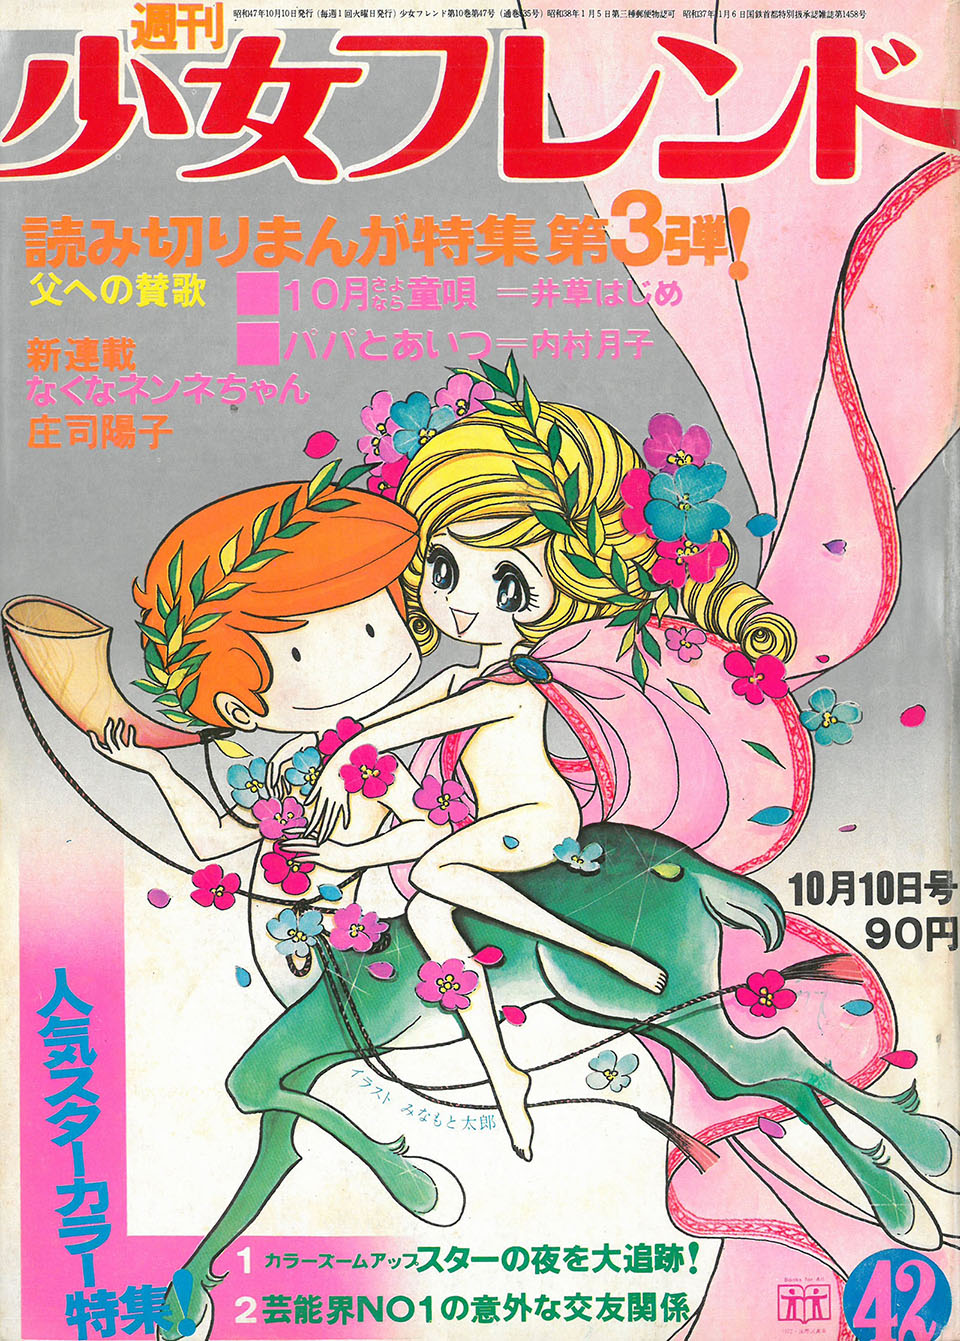 みなもと太郎「ふたりは恋人」『週刊少女フレンド』 1972年10月10日(42）号